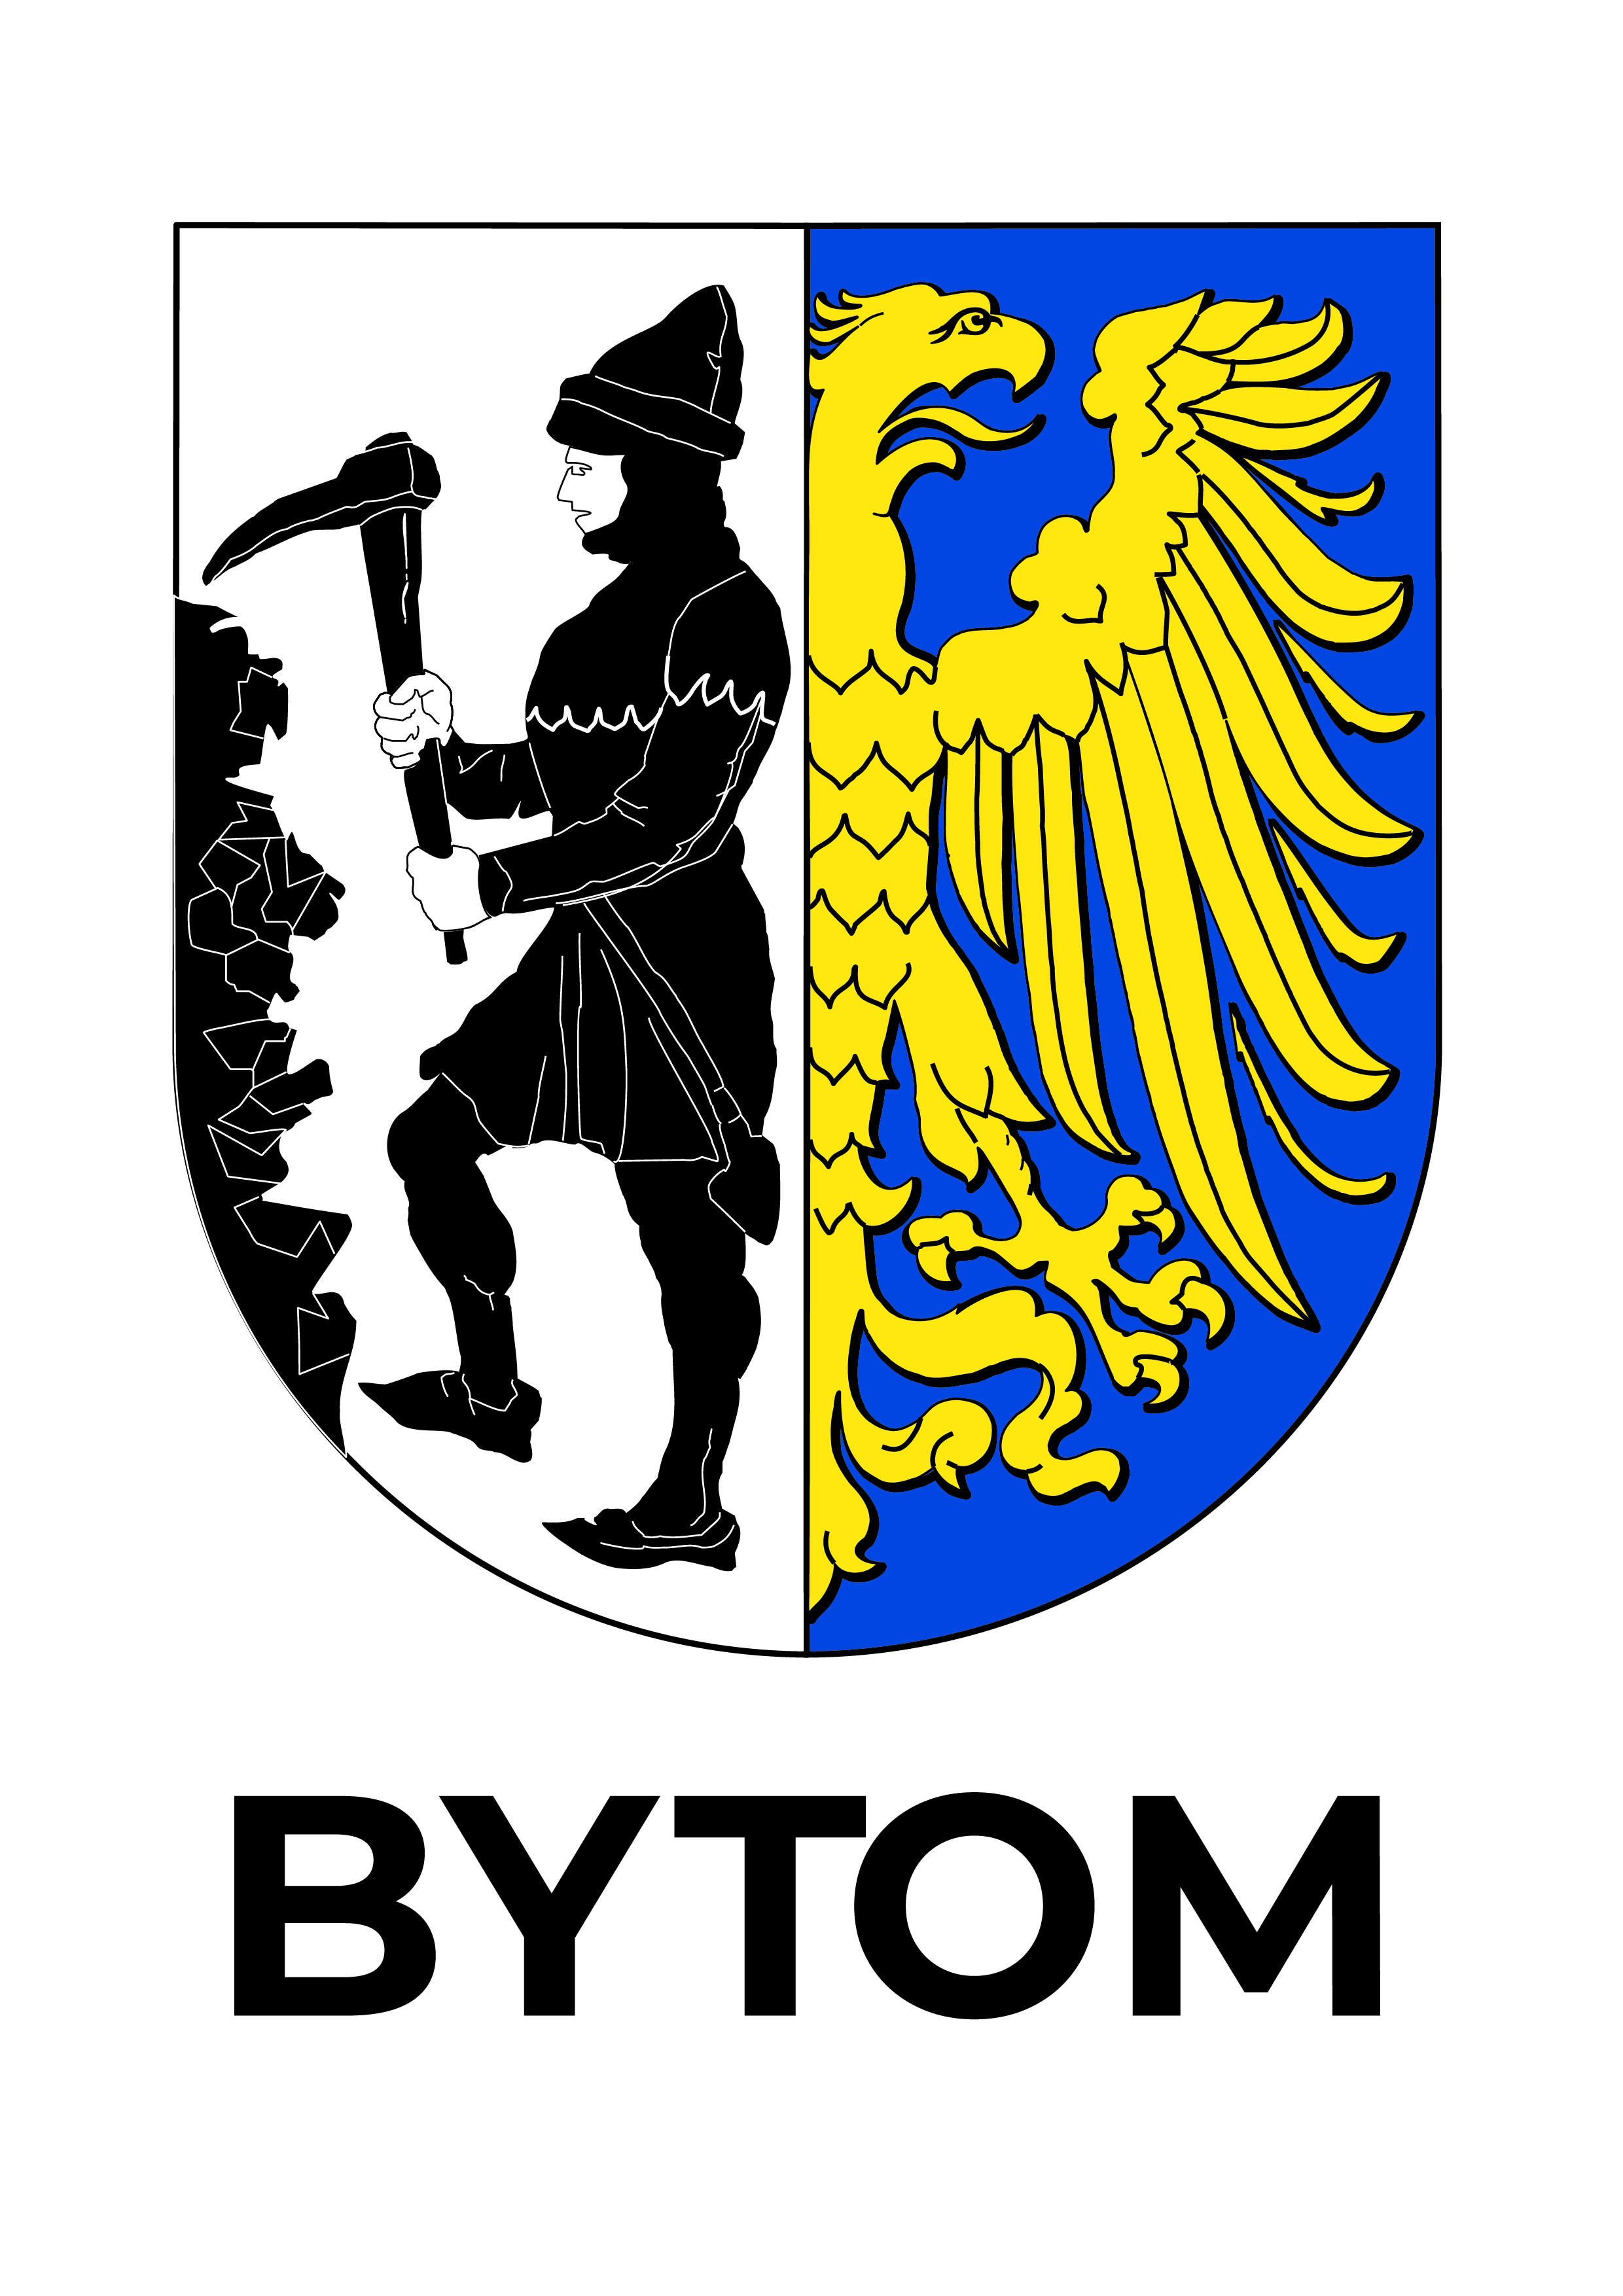 Refundacja in vitro 
-  Bytom - logo